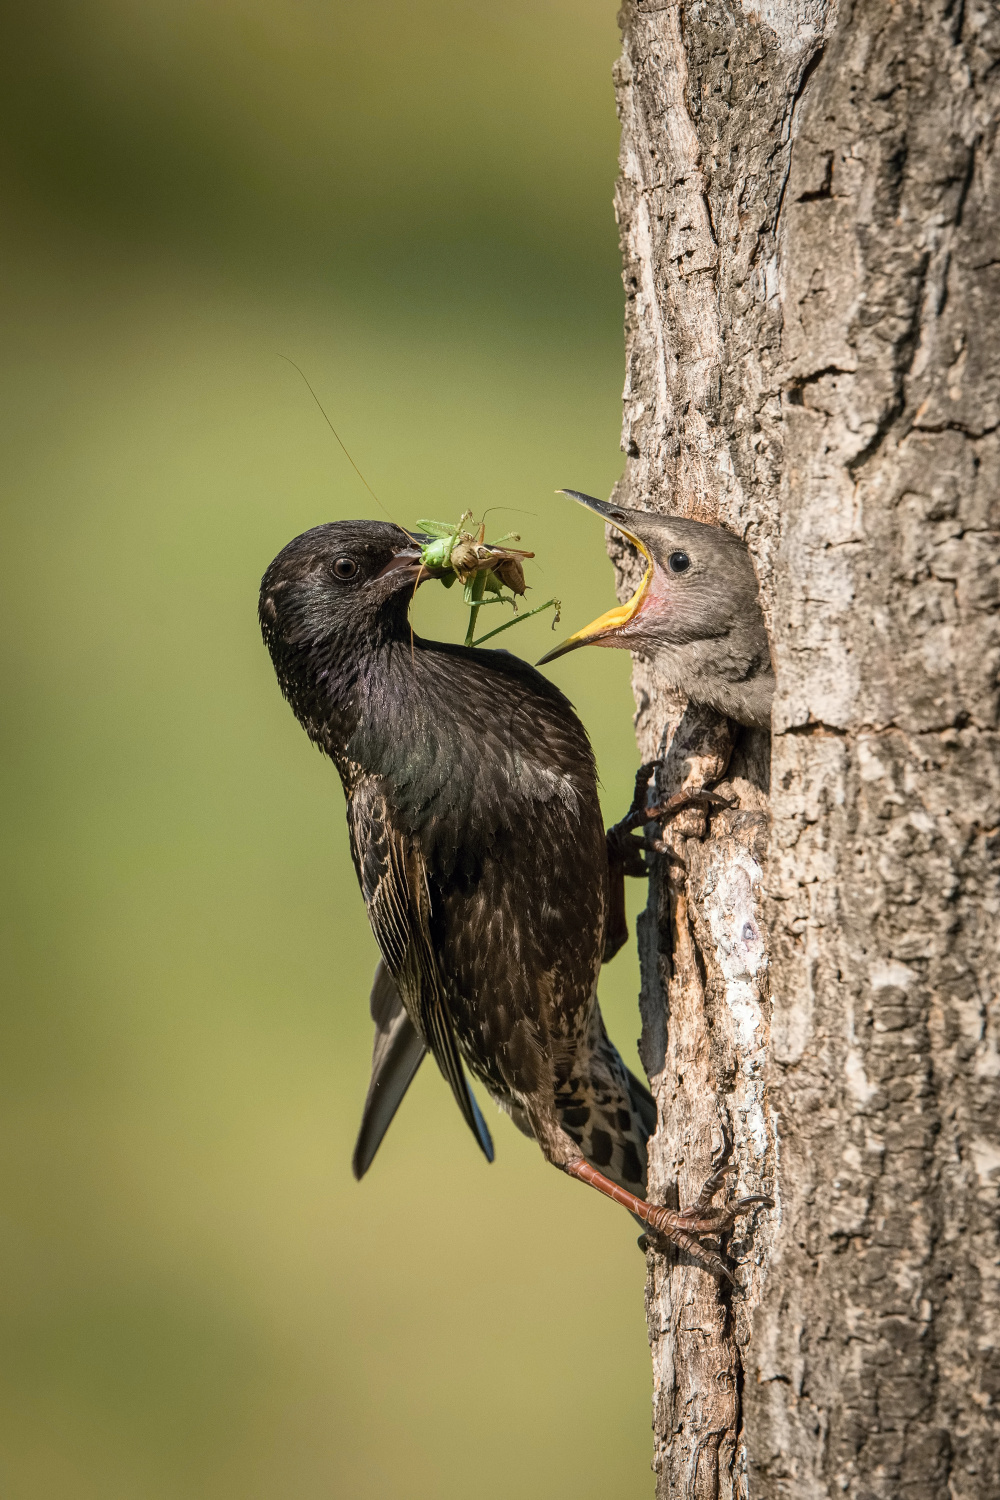 špaček obecný (Sturnus vulgaris) Common starling